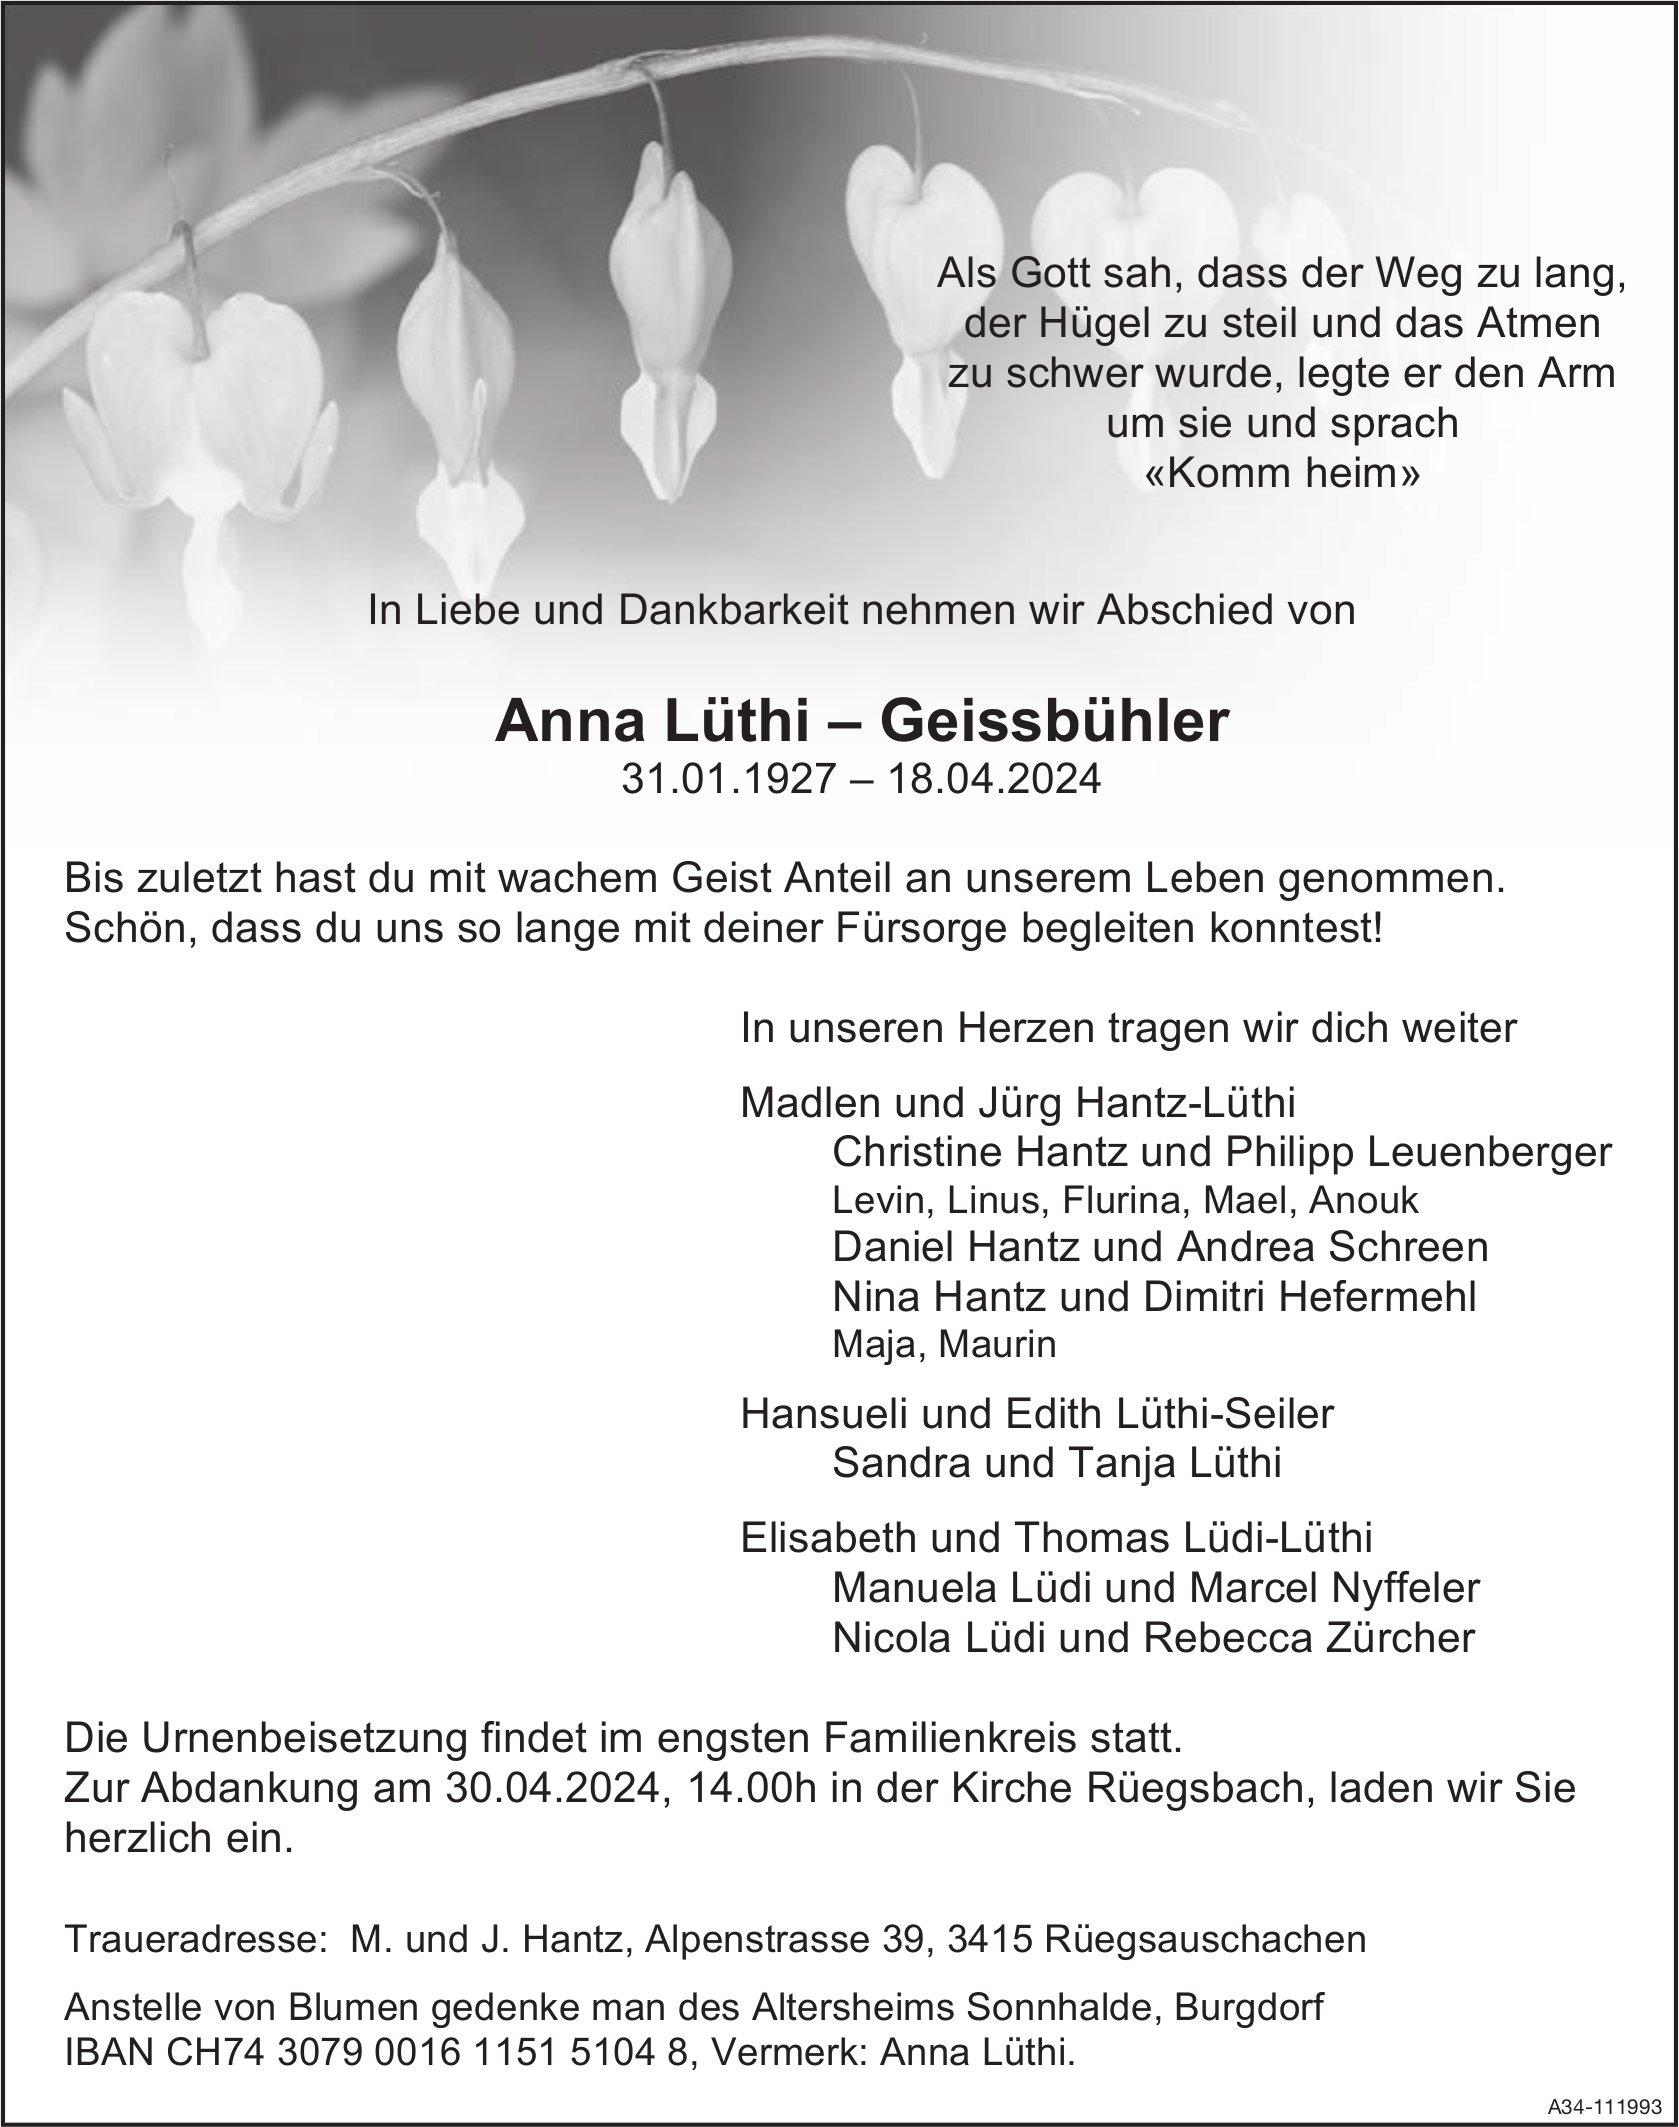 Anna Lüthi – Geissbühler, April 2024 / TA